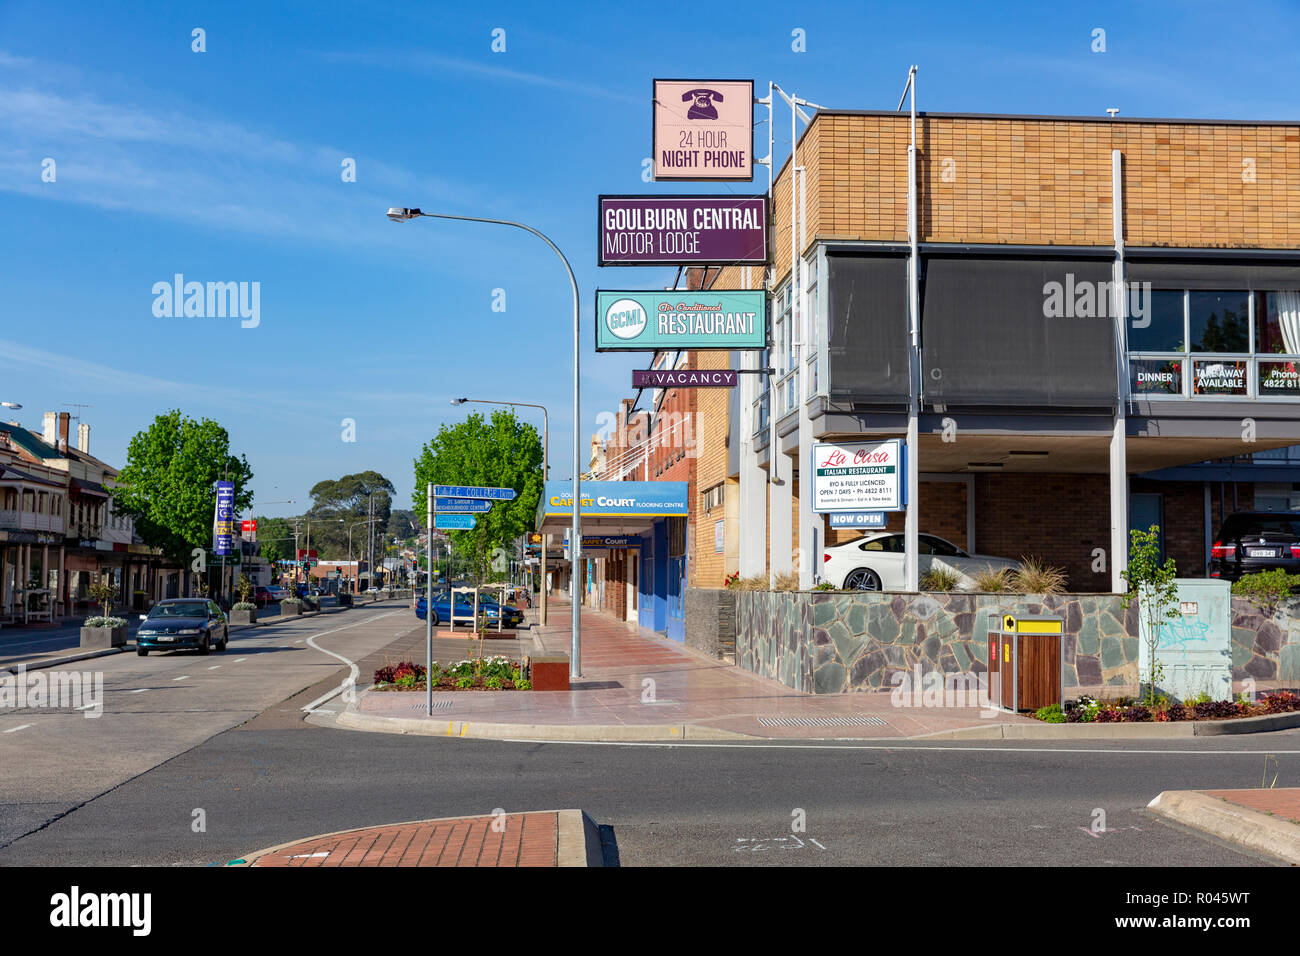 Goulburn city centre, una delle principali città terrestre a livello regionale NSW, Australia Foto Stock